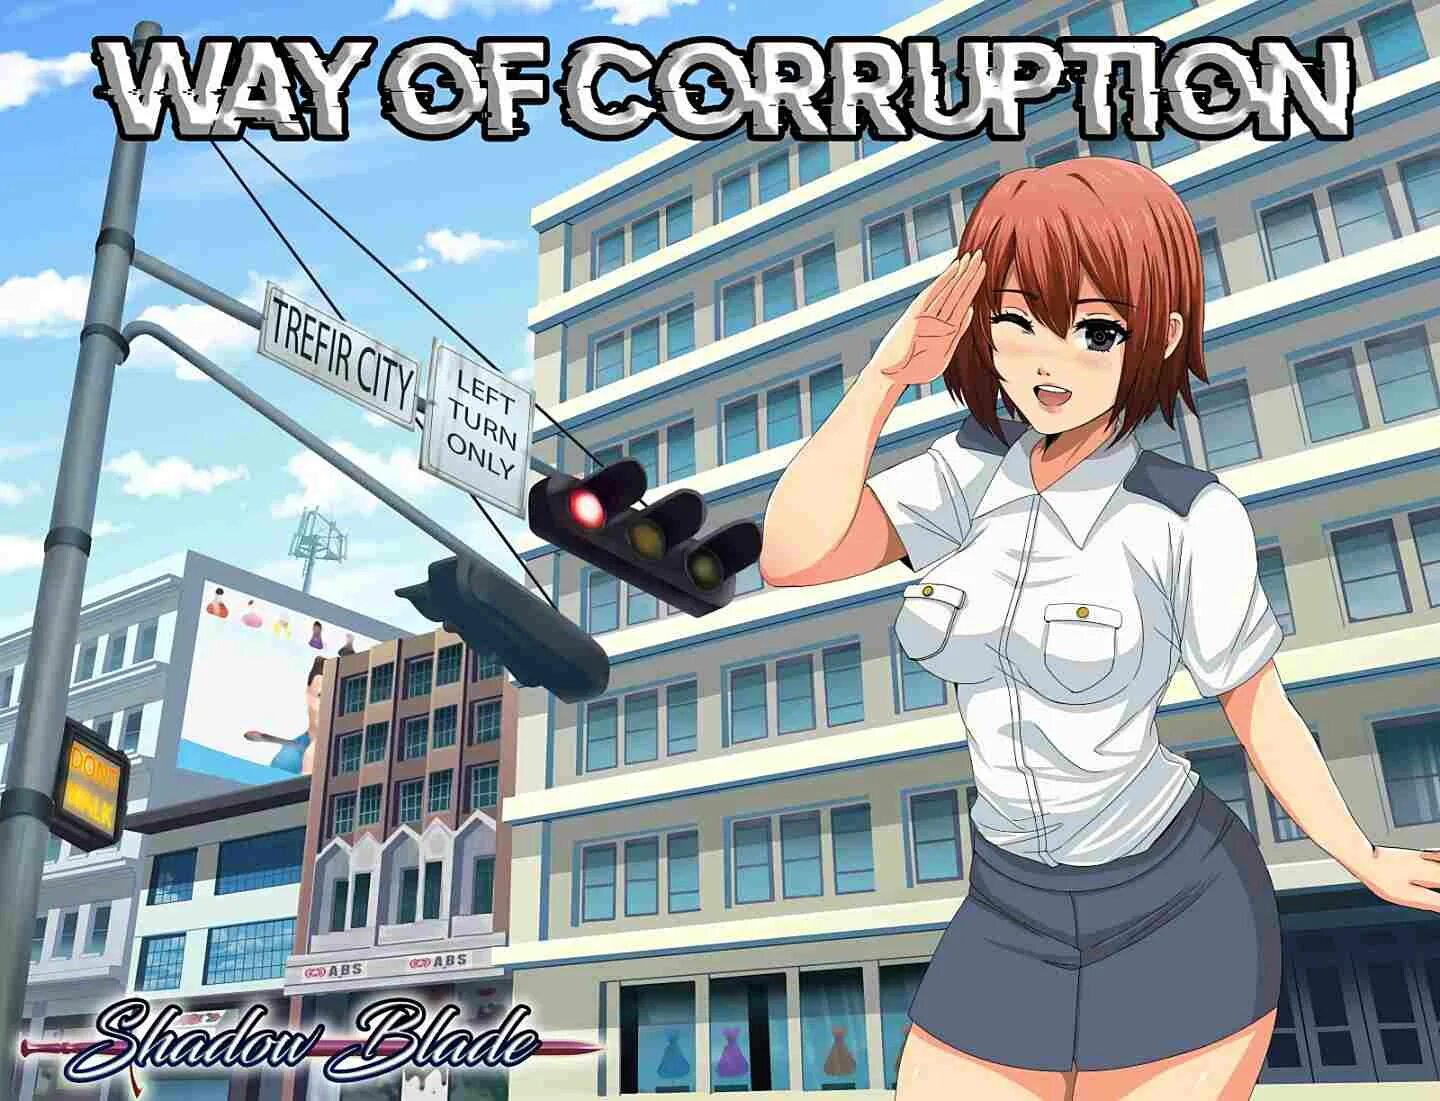 Way of corruption. Corruption игра. Agency of corruption игра. H-game коррупция.